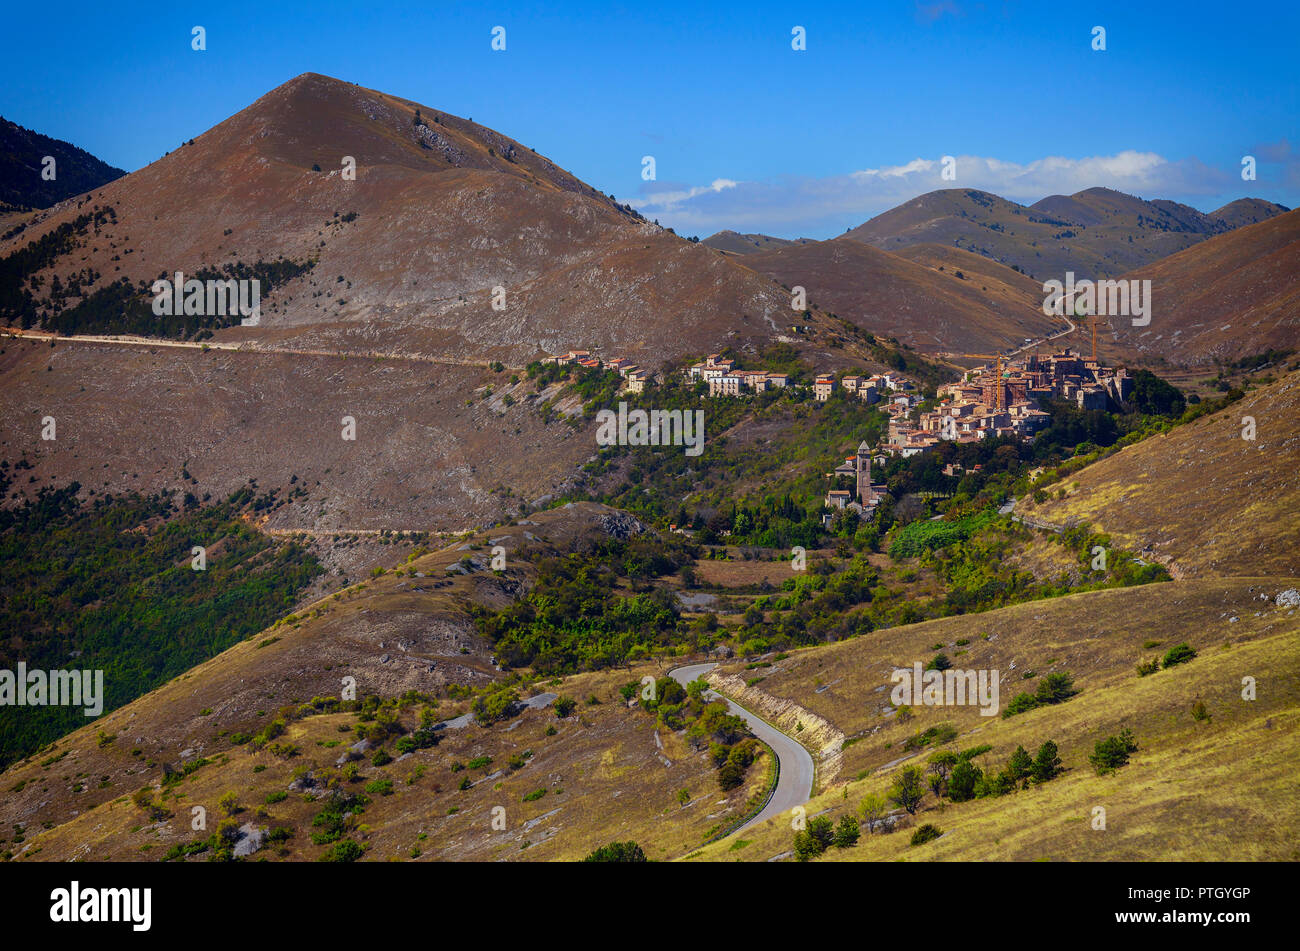 A la vista de la carretera de Santo Stefano di Sessanio, un pueblo de montaña en la provincia de L'Aquila, en la región de Abruzzo en el sur de Italia. Foto de stock